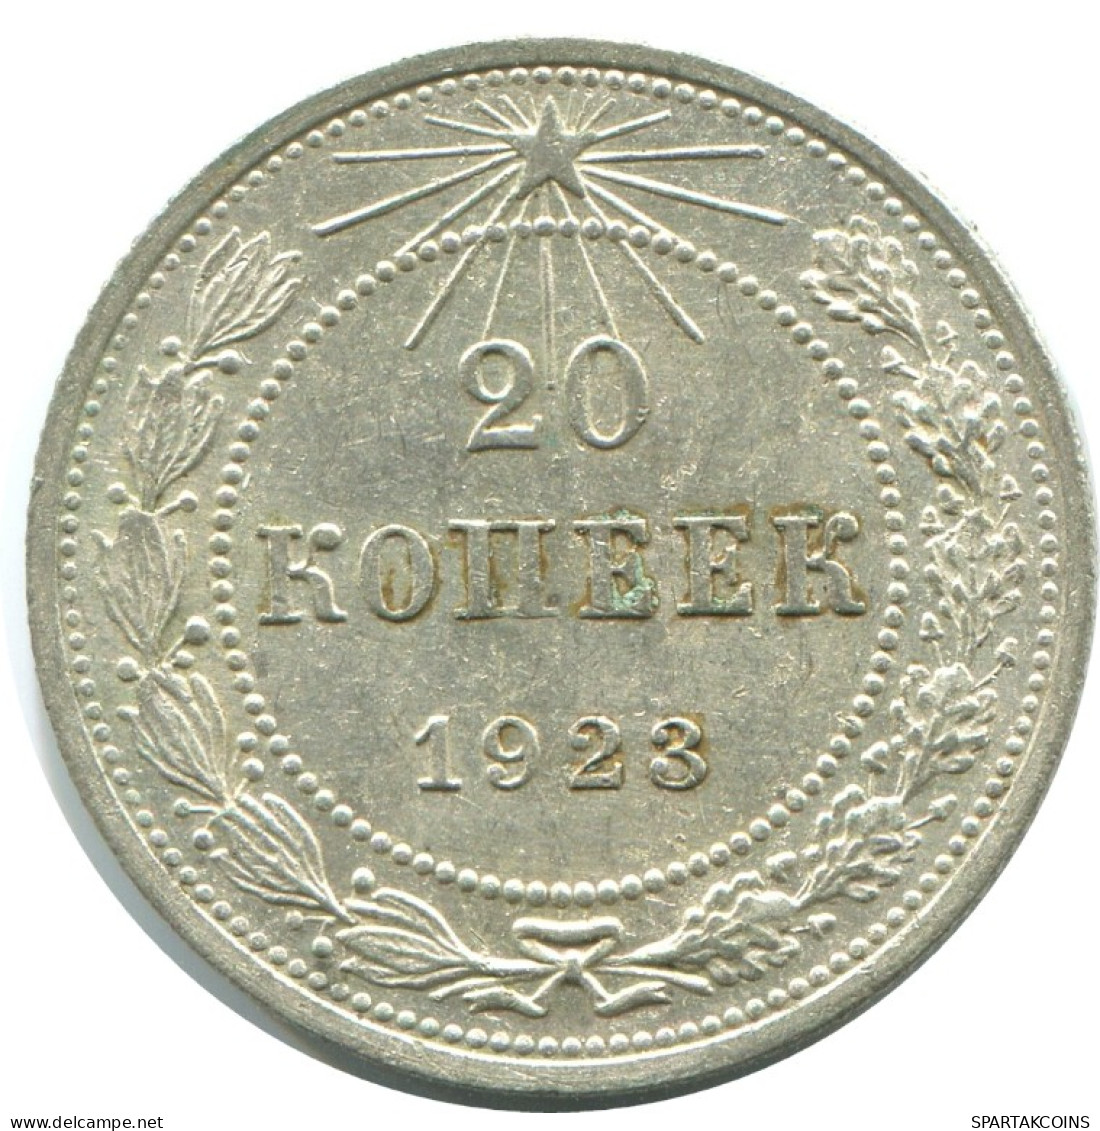 20 KOPEKS 1923 RUSSLAND RUSSIA RSFSR SILBER Münze HIGH GRADE #AF434.4.D.A - Rusia